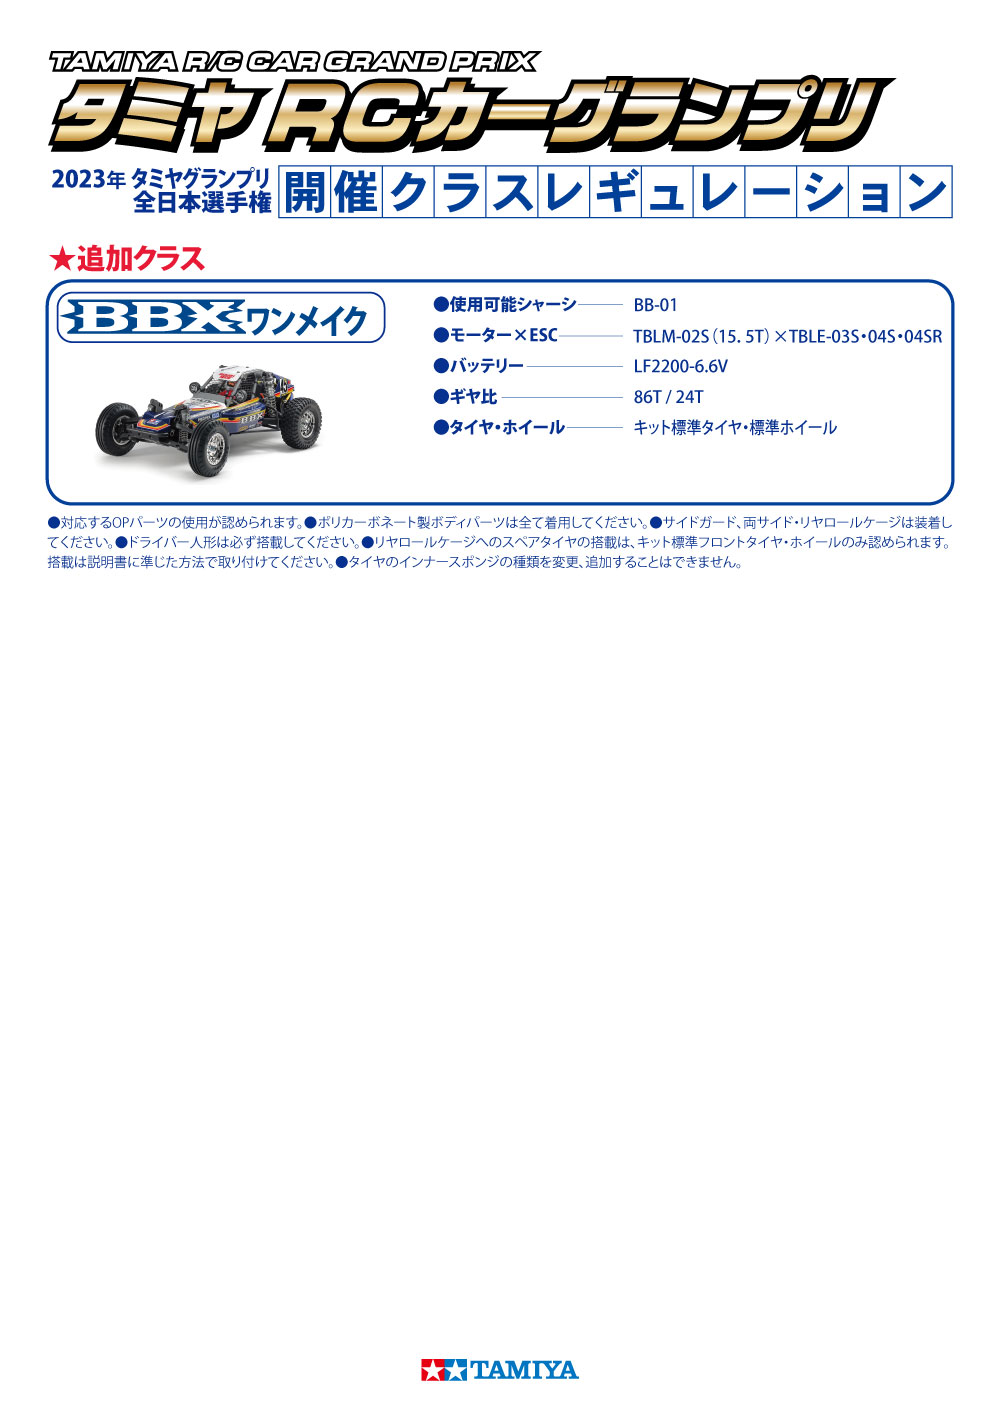 タミヤグランプリ全日本選手権2023 | タミヤ